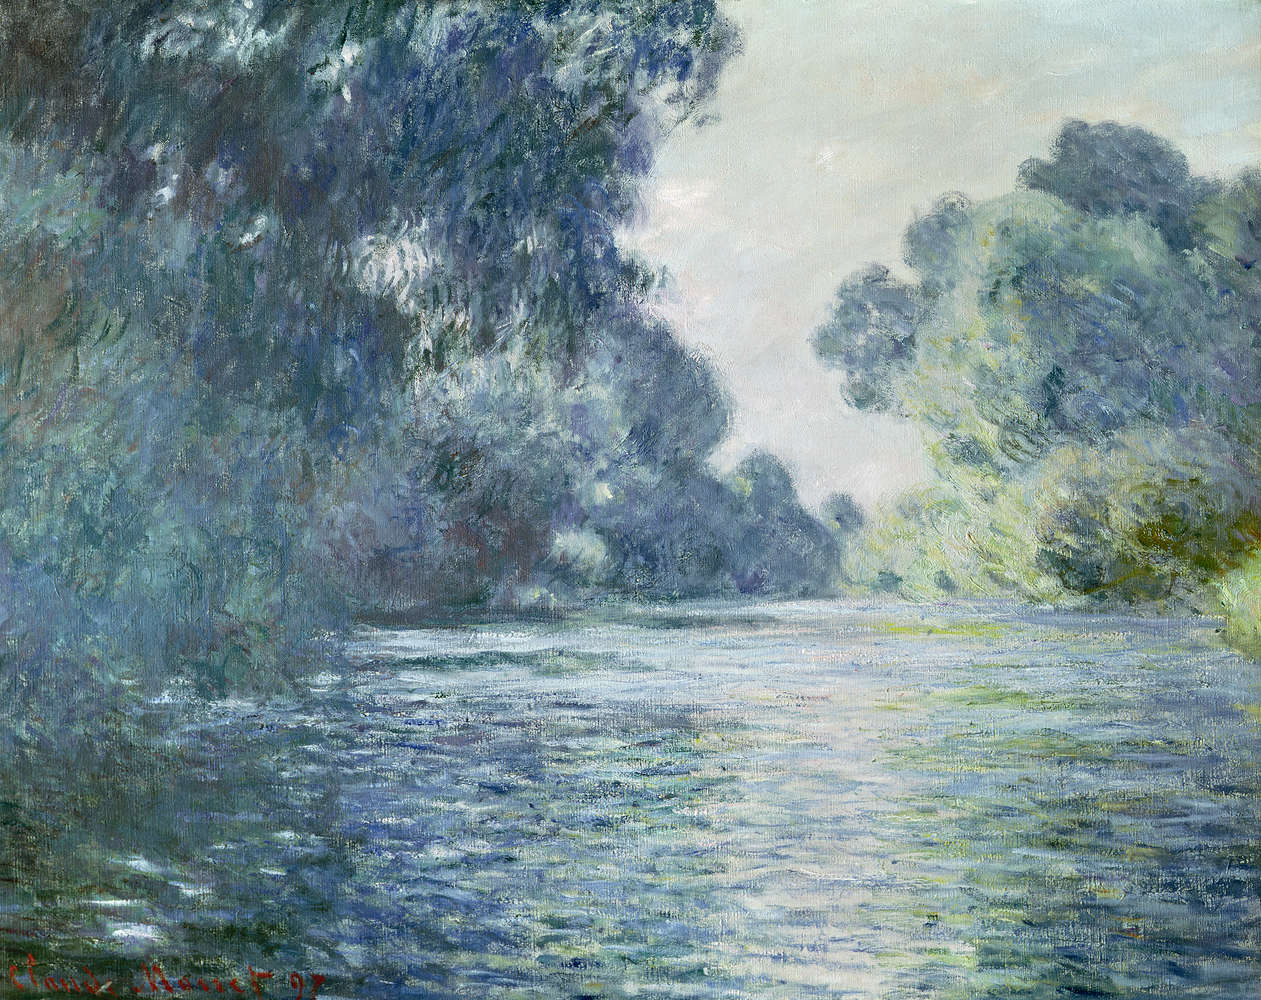             Papier peint panoramique "Sur un bras de la Seine près de Giverny" de Claude Monet
        